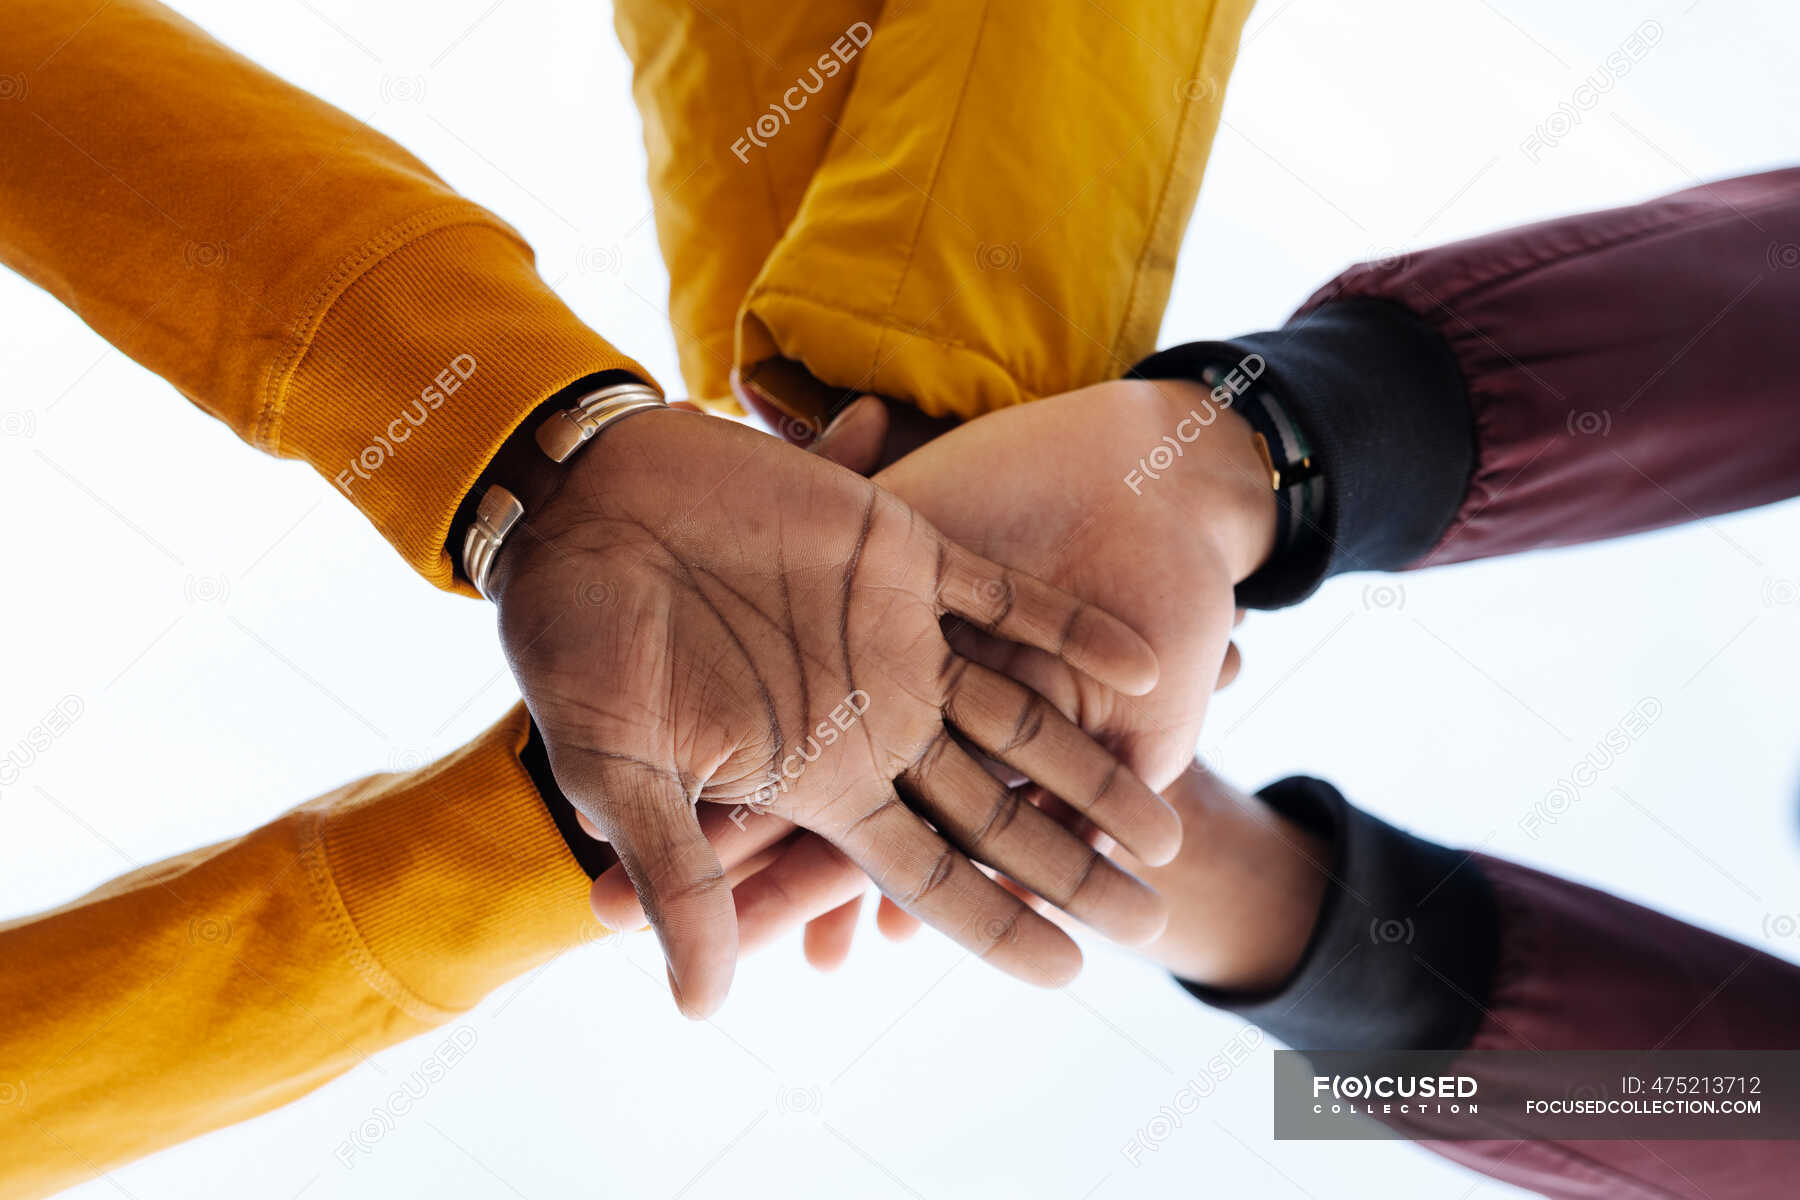 Восемь друзей пожали друг другу руки сколько. Рукопожатие друзей. Руки складывают друг на друга. Фото жмут руки друг другу хоккеисты.